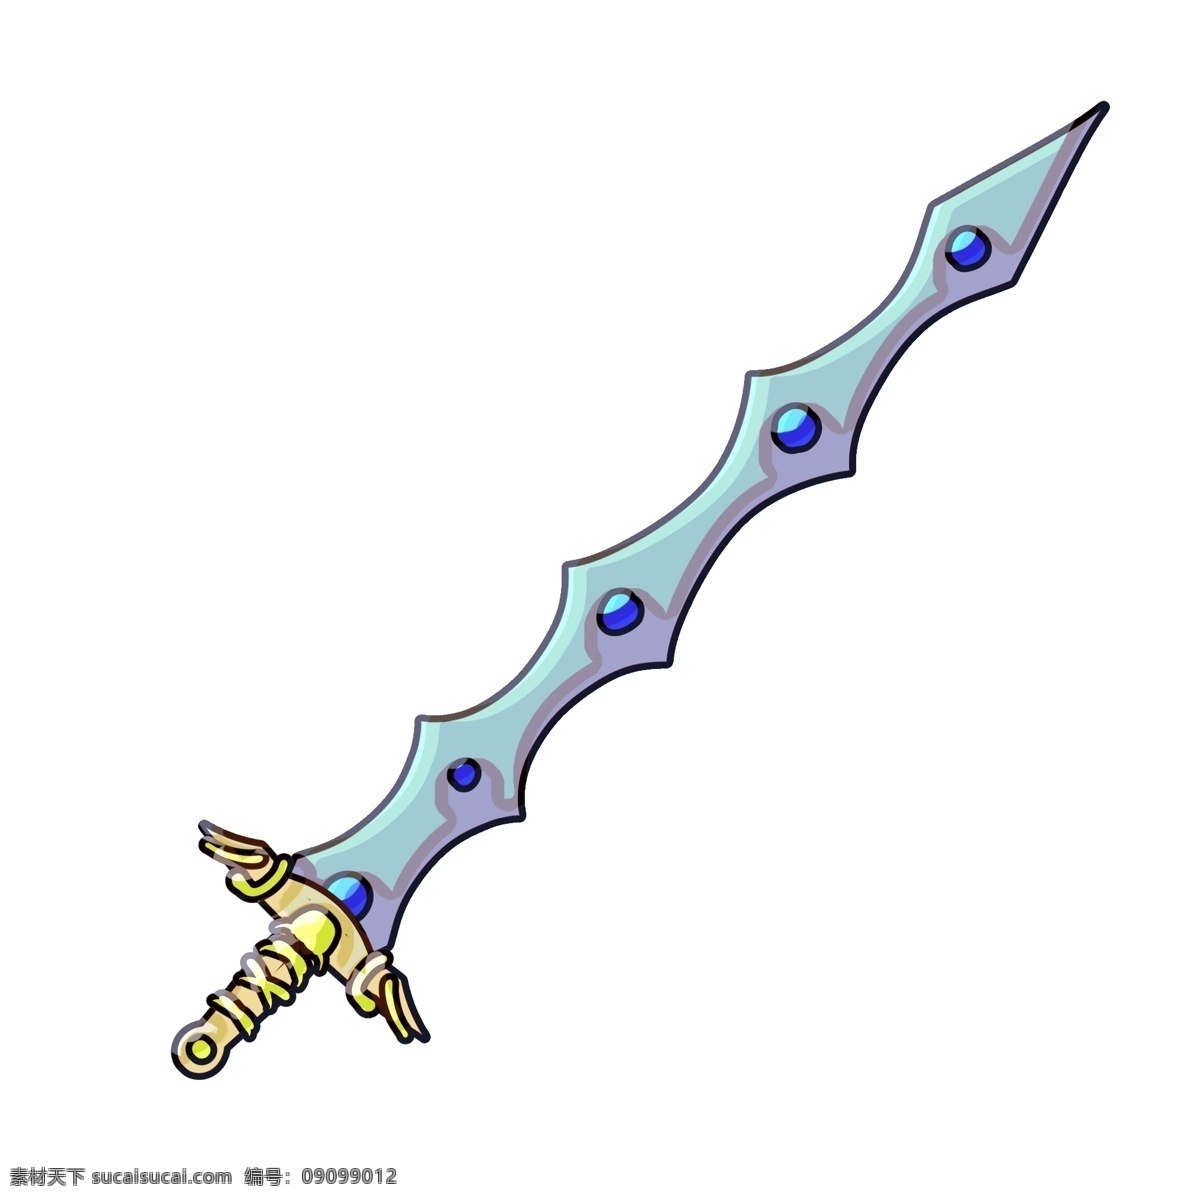 蓝色 宝剑 装饰 插画 蓝色的宝剑 漂亮的宝剑 古风宝剑 创意宝剑 精美宝剑 宝剑装饰 宝剑插画